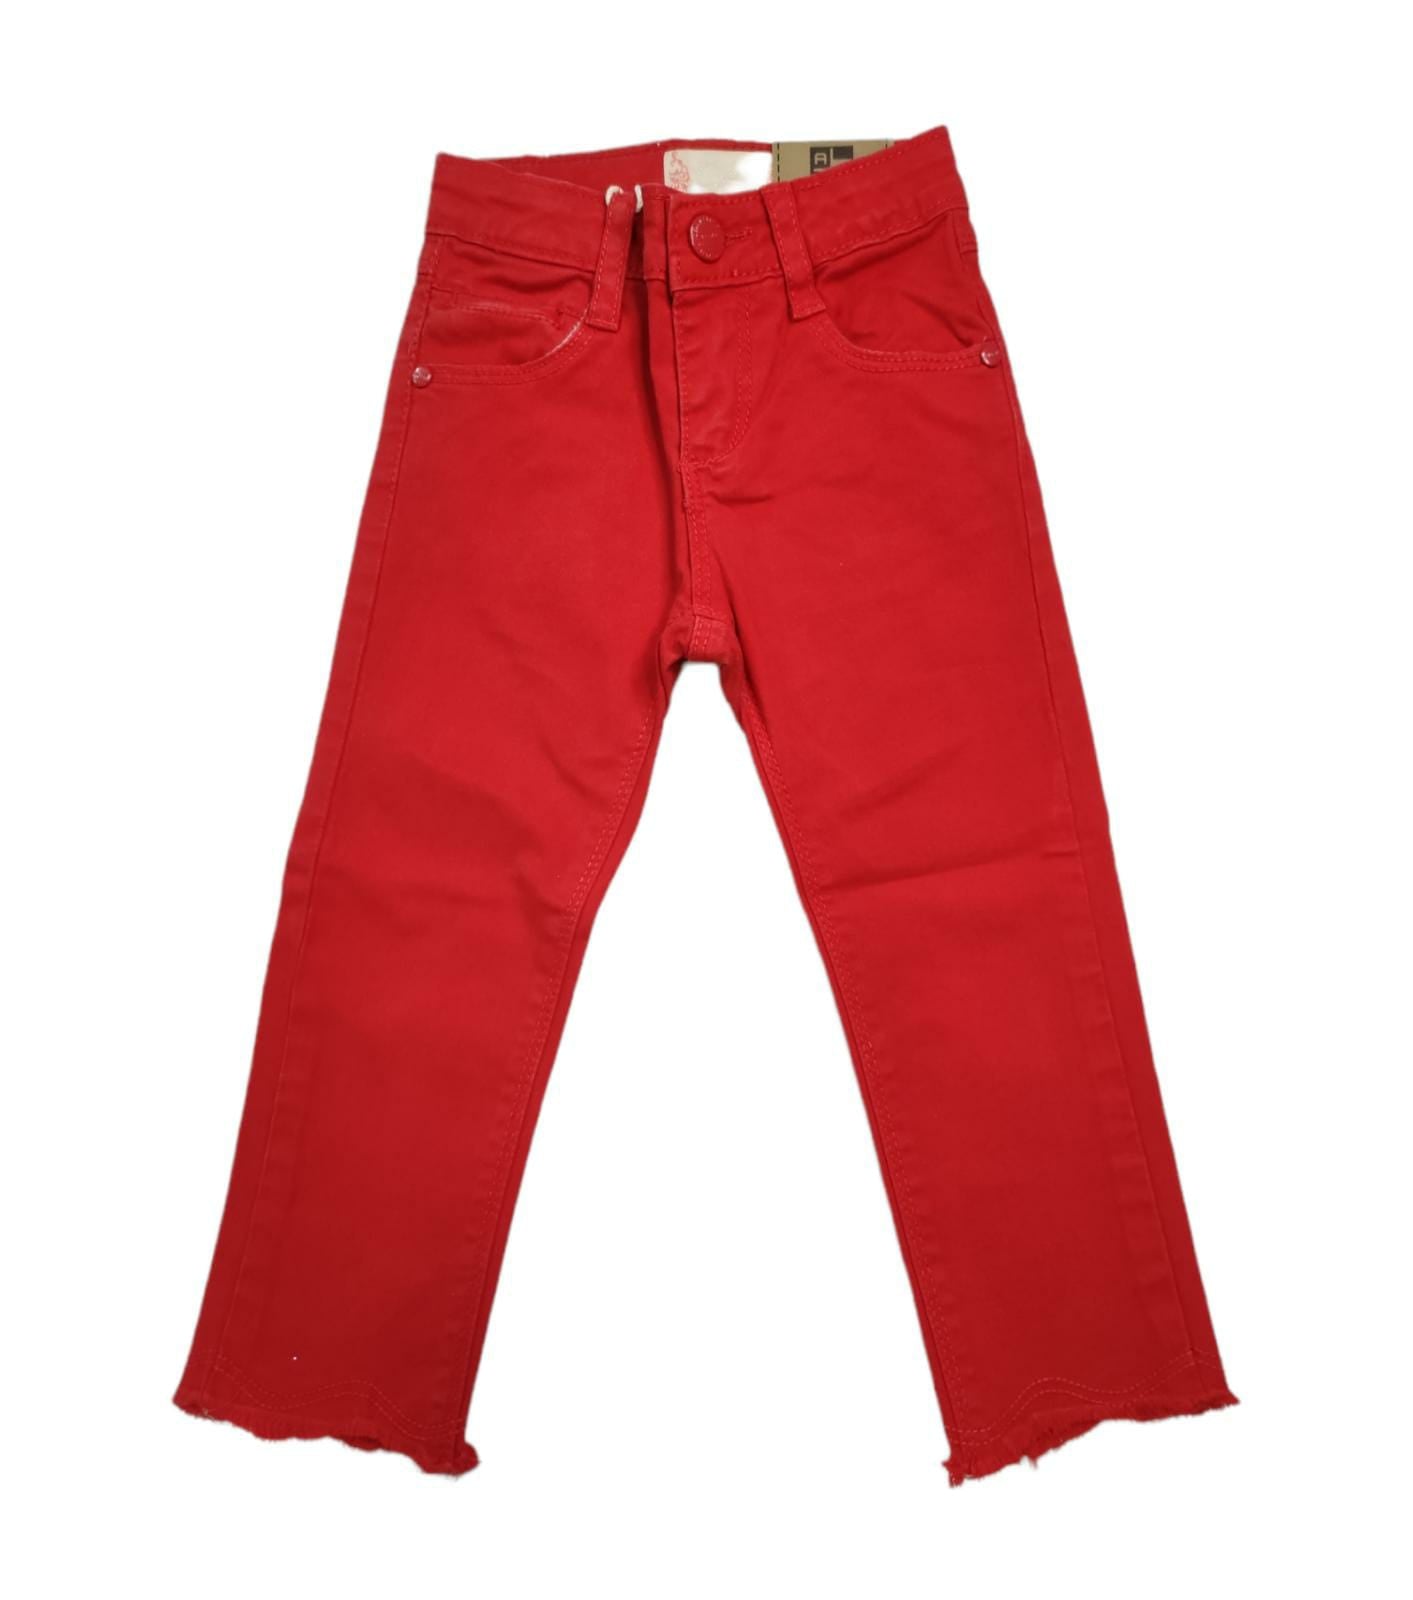 Jeans in Jersey di Cotone Colorato Rosso Elasticizzato Modello 5 Tasche Bambina 6-36 Mesi